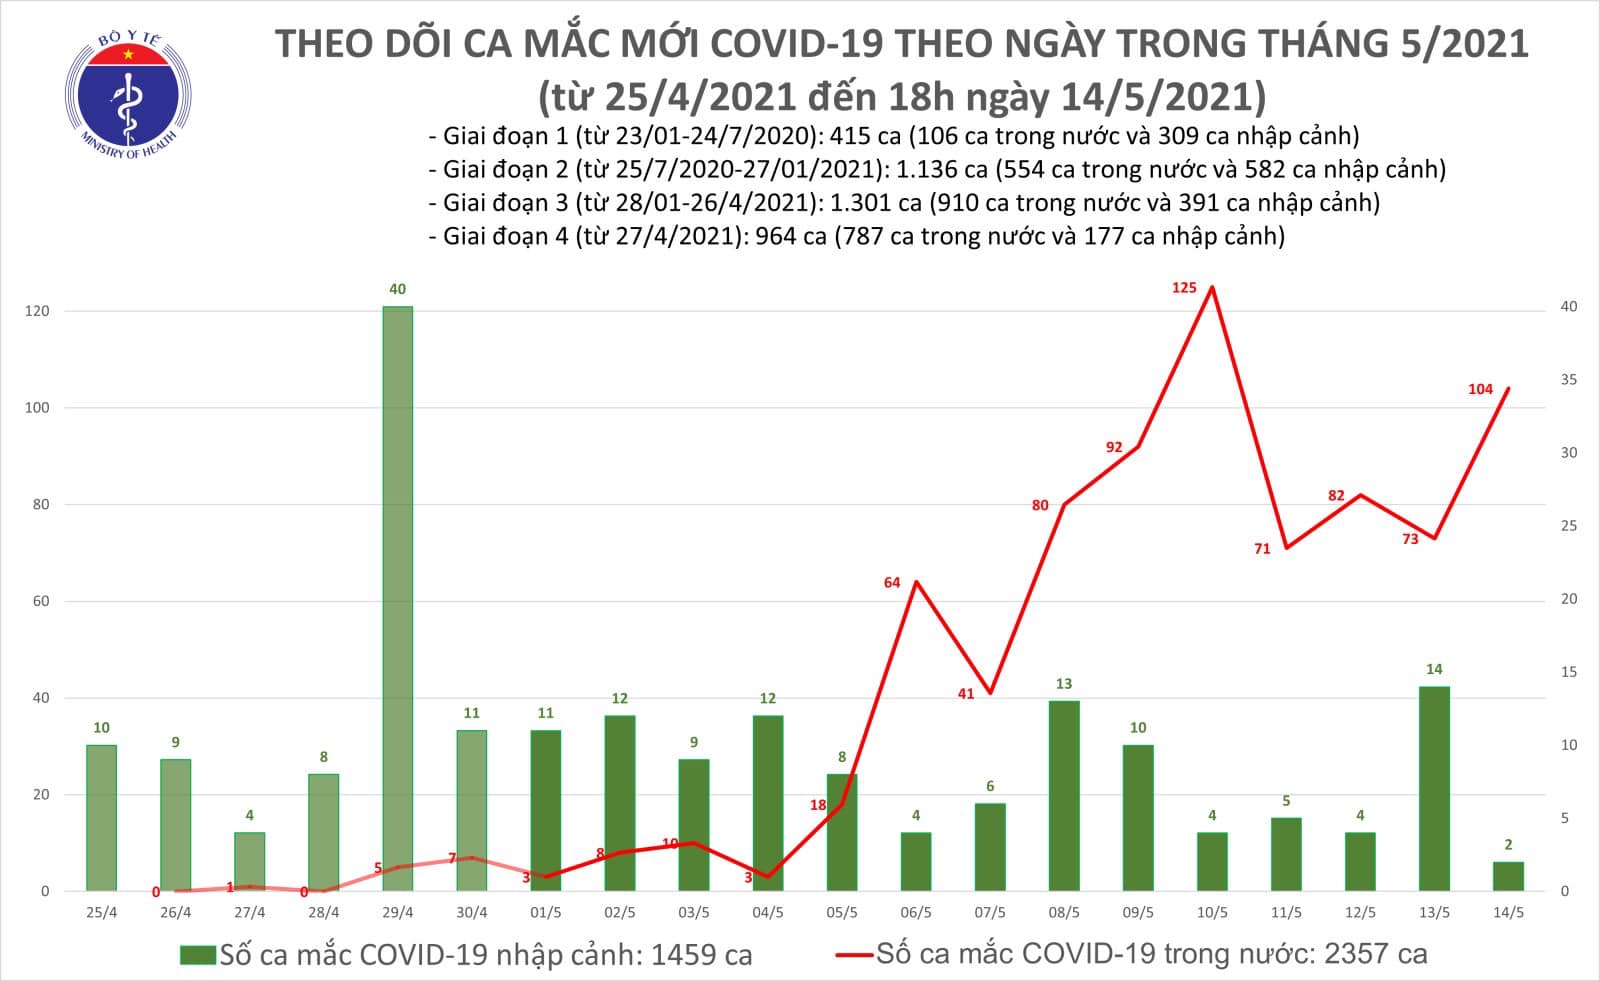 Tối 14/5: Thêm 59 ca mắc COVID-19 ghi nhận trong nước, riêng Bắc Ninh 33 ca